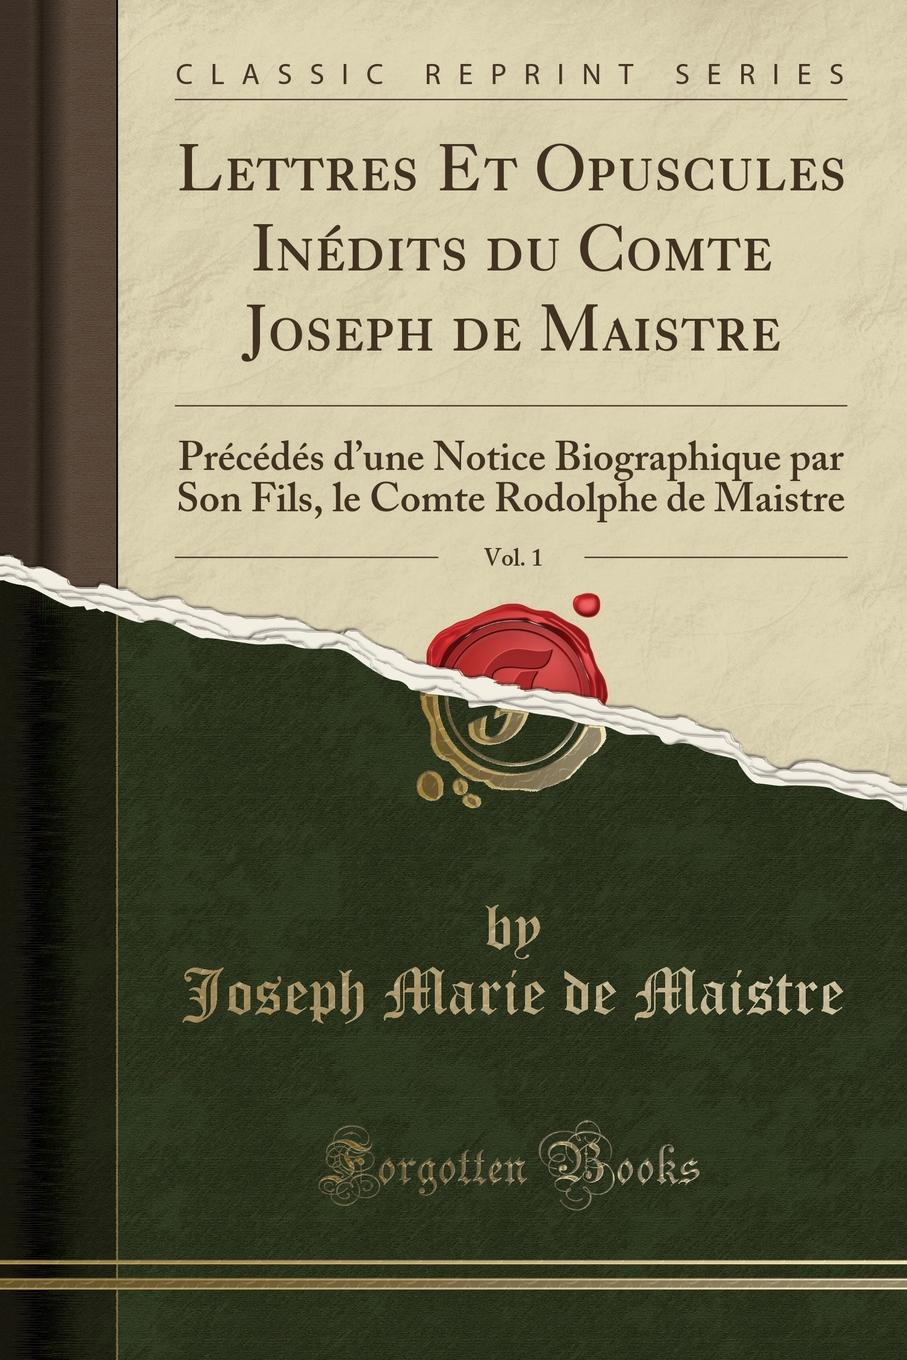 Lettres Et Opuscules Inedits du Comte Joseph de Maistre, Vol. 1. Precedes d.une Notice Biographique par Son Fils, le Comte Rodolphe de Maistre (Classic Reprint)